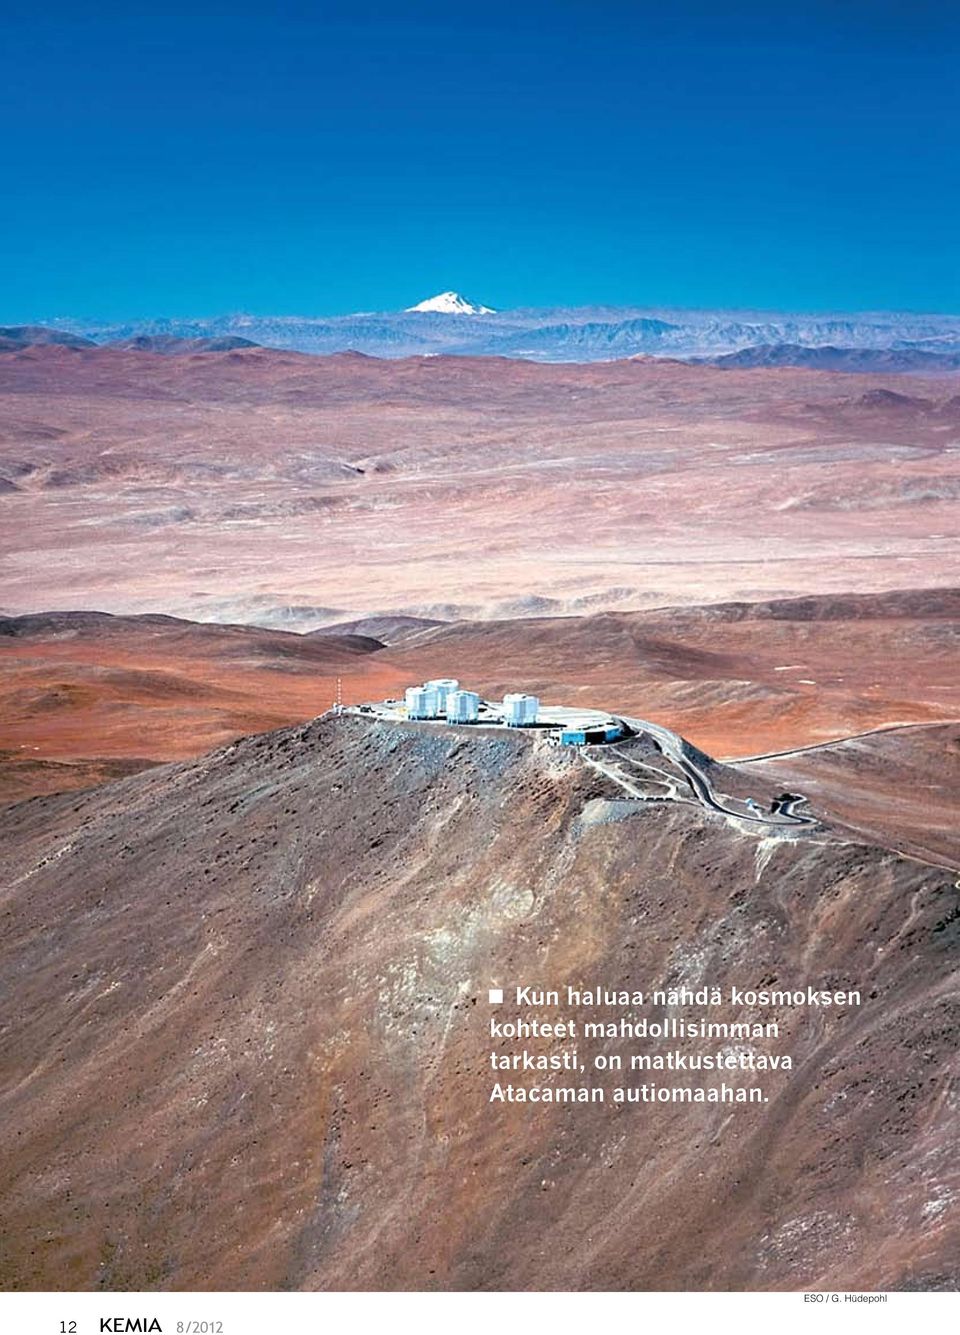 on matkustettava Atacaman